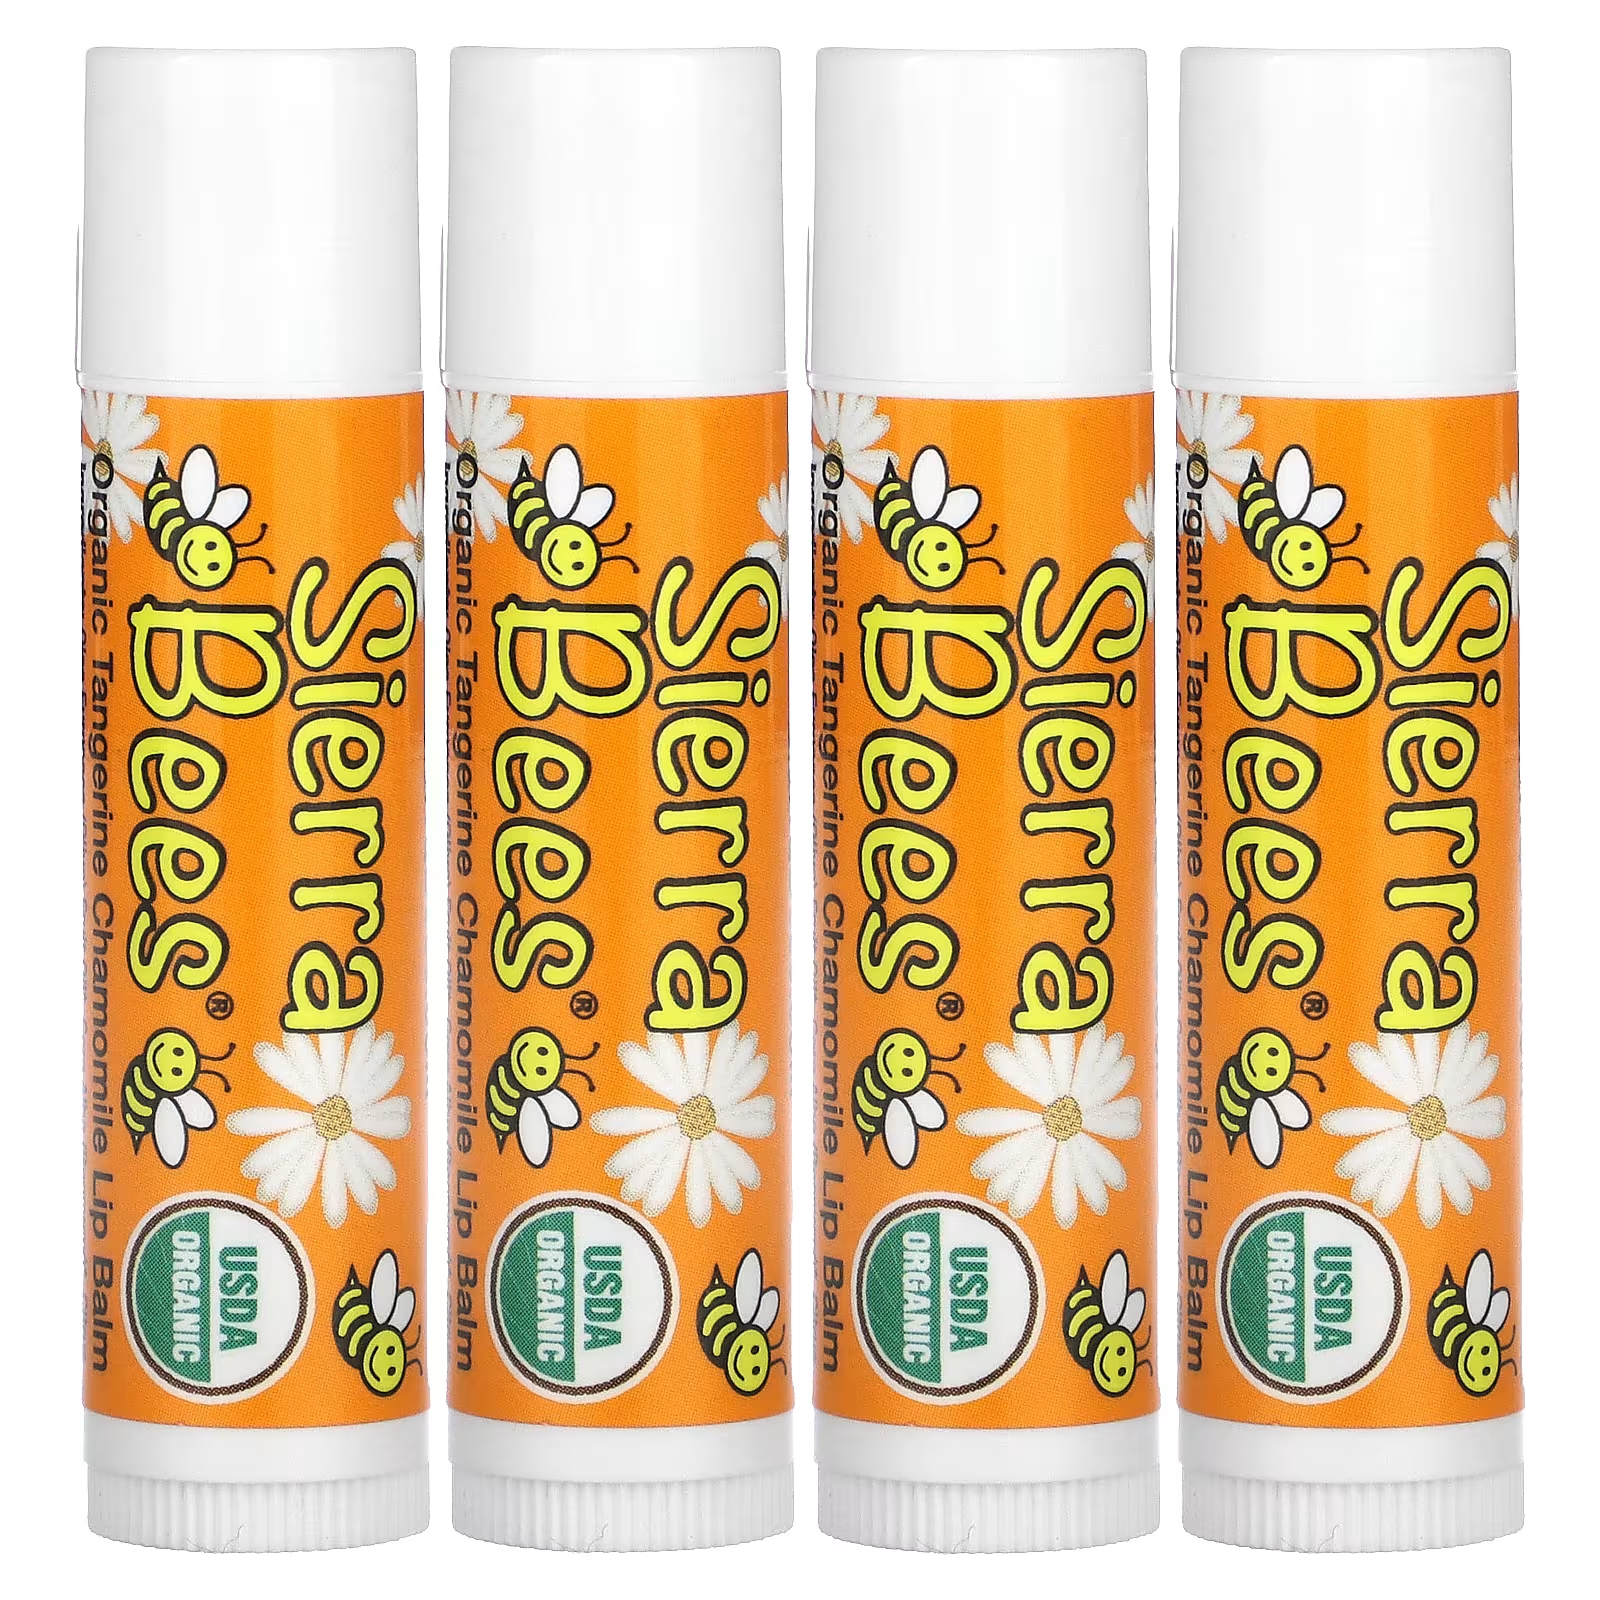 Органические бальзамы для губ Sierra Bees «Мандарин и ромашка», 4 упаковки по 0,15 унции (4,25 г) каждая sierra bees органические бальзамы для губ гранат 4 штуки по 4 25 г 0 15 унции